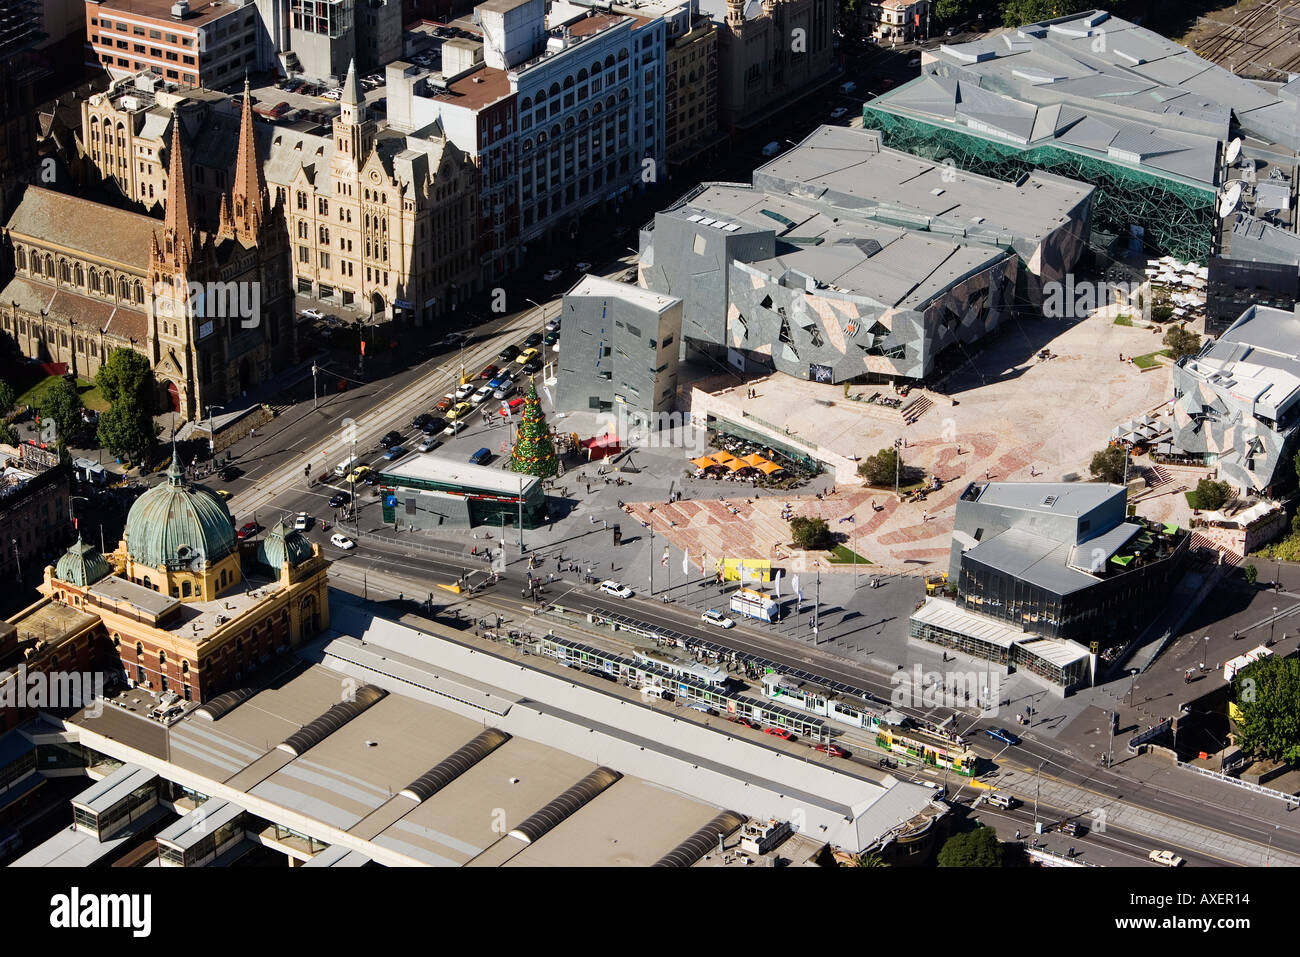 La gare Flinders St en bas à gauche, Federation Square, Melbourne, Australie Banque D'Images